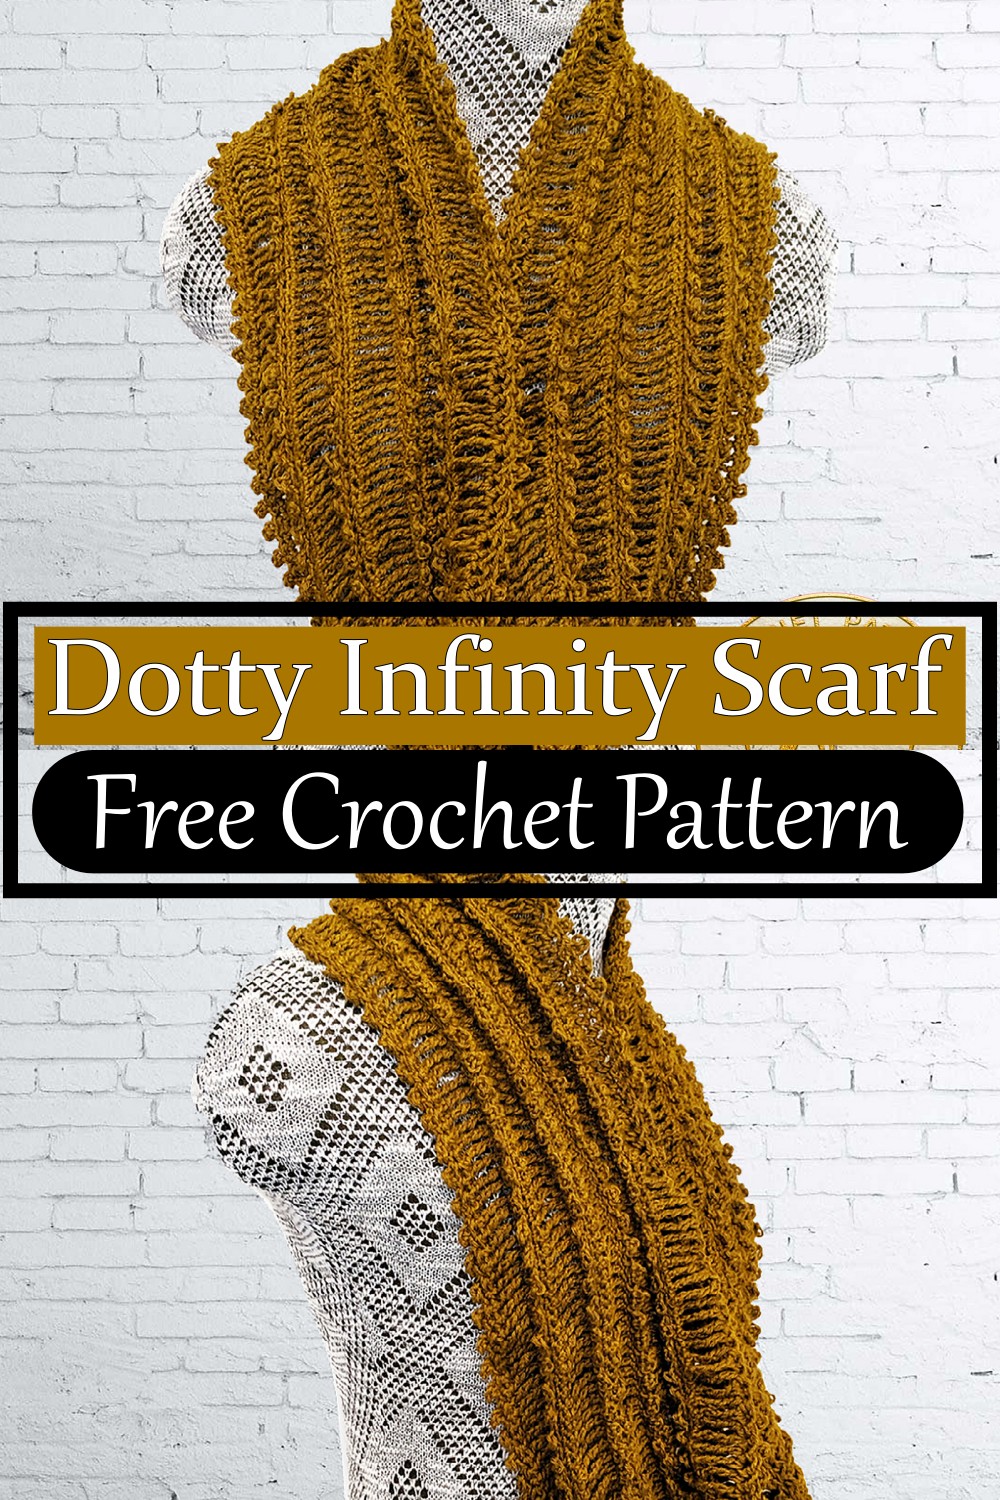 Dotty Infinity Scarf